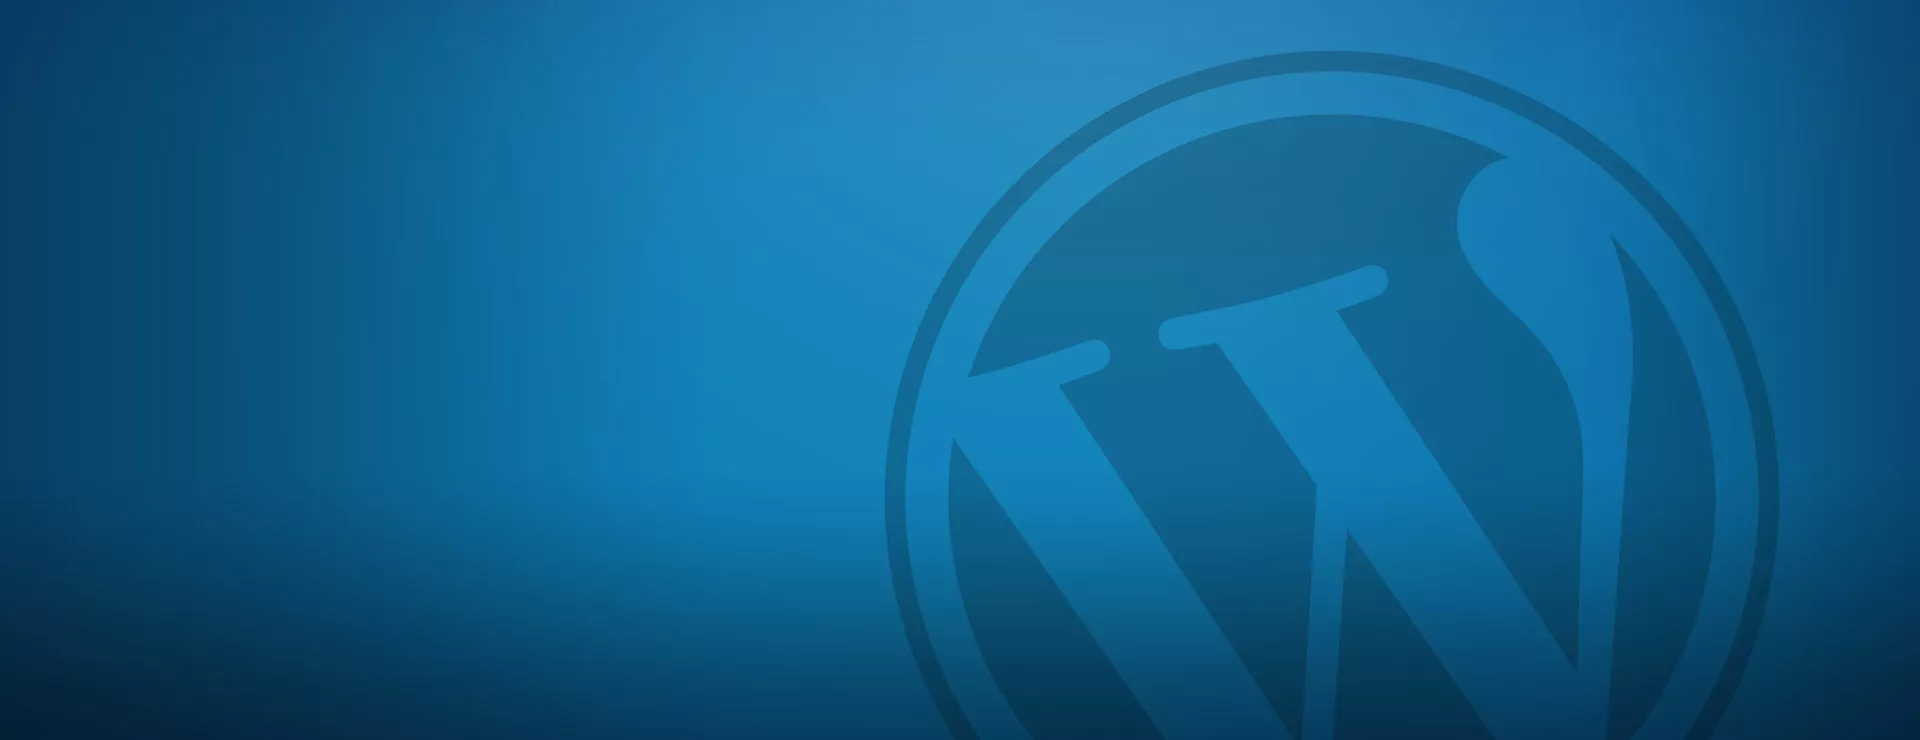 WordPress: retirer l'option de supprimer les plugins dans l'interface d'administration photo